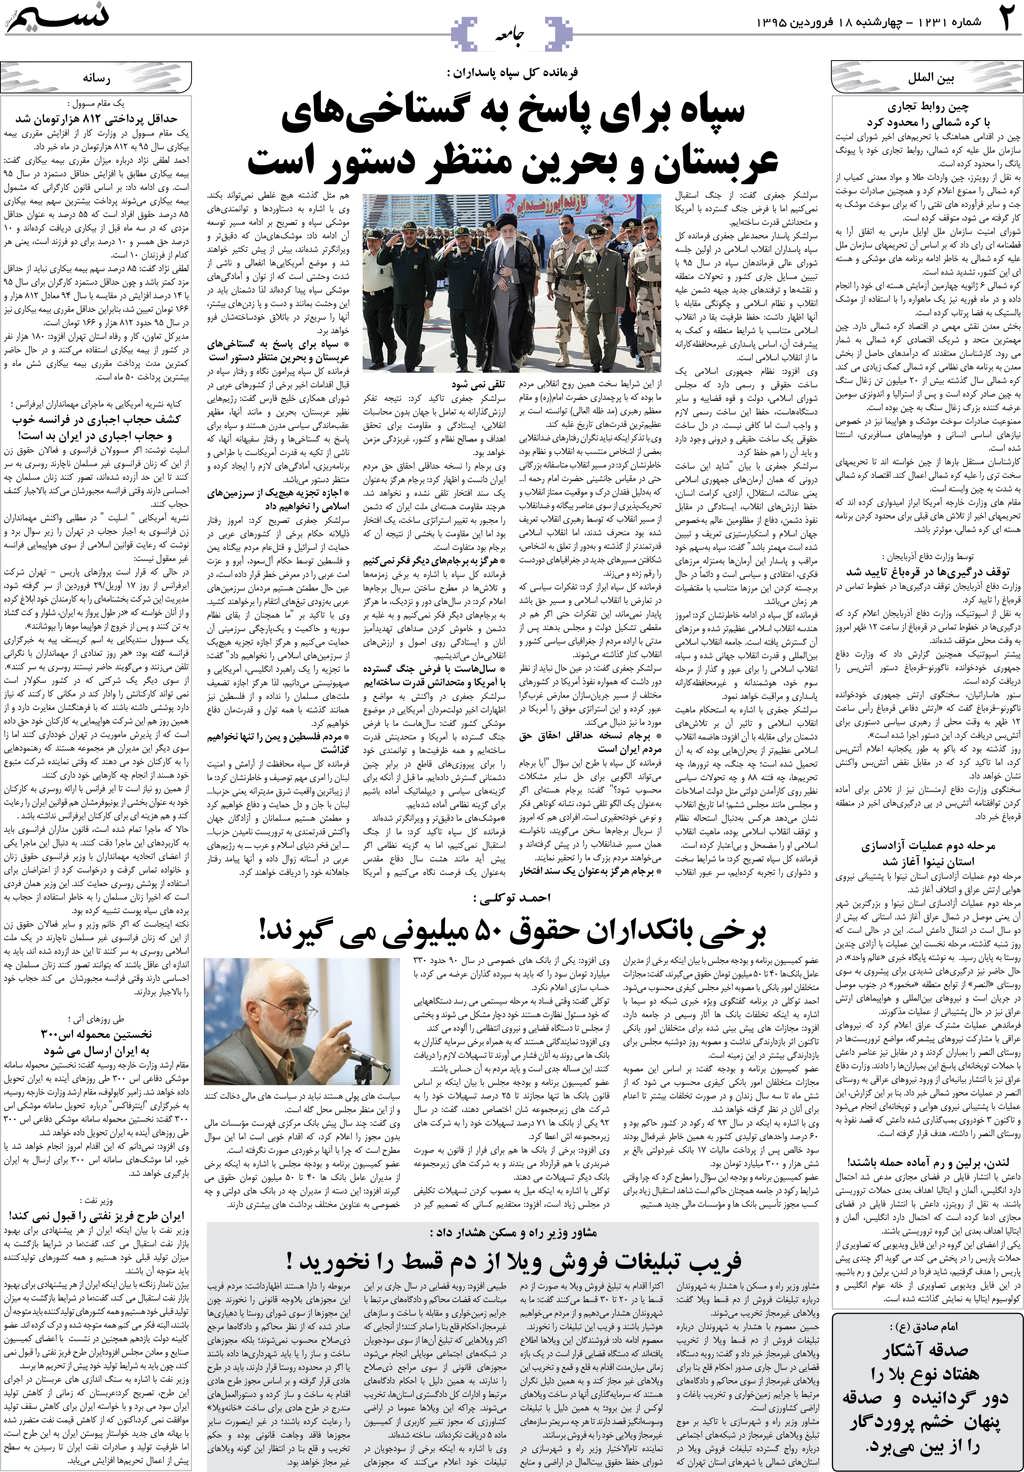 صفحه جامعه روزنامه نسیم شماره 1231